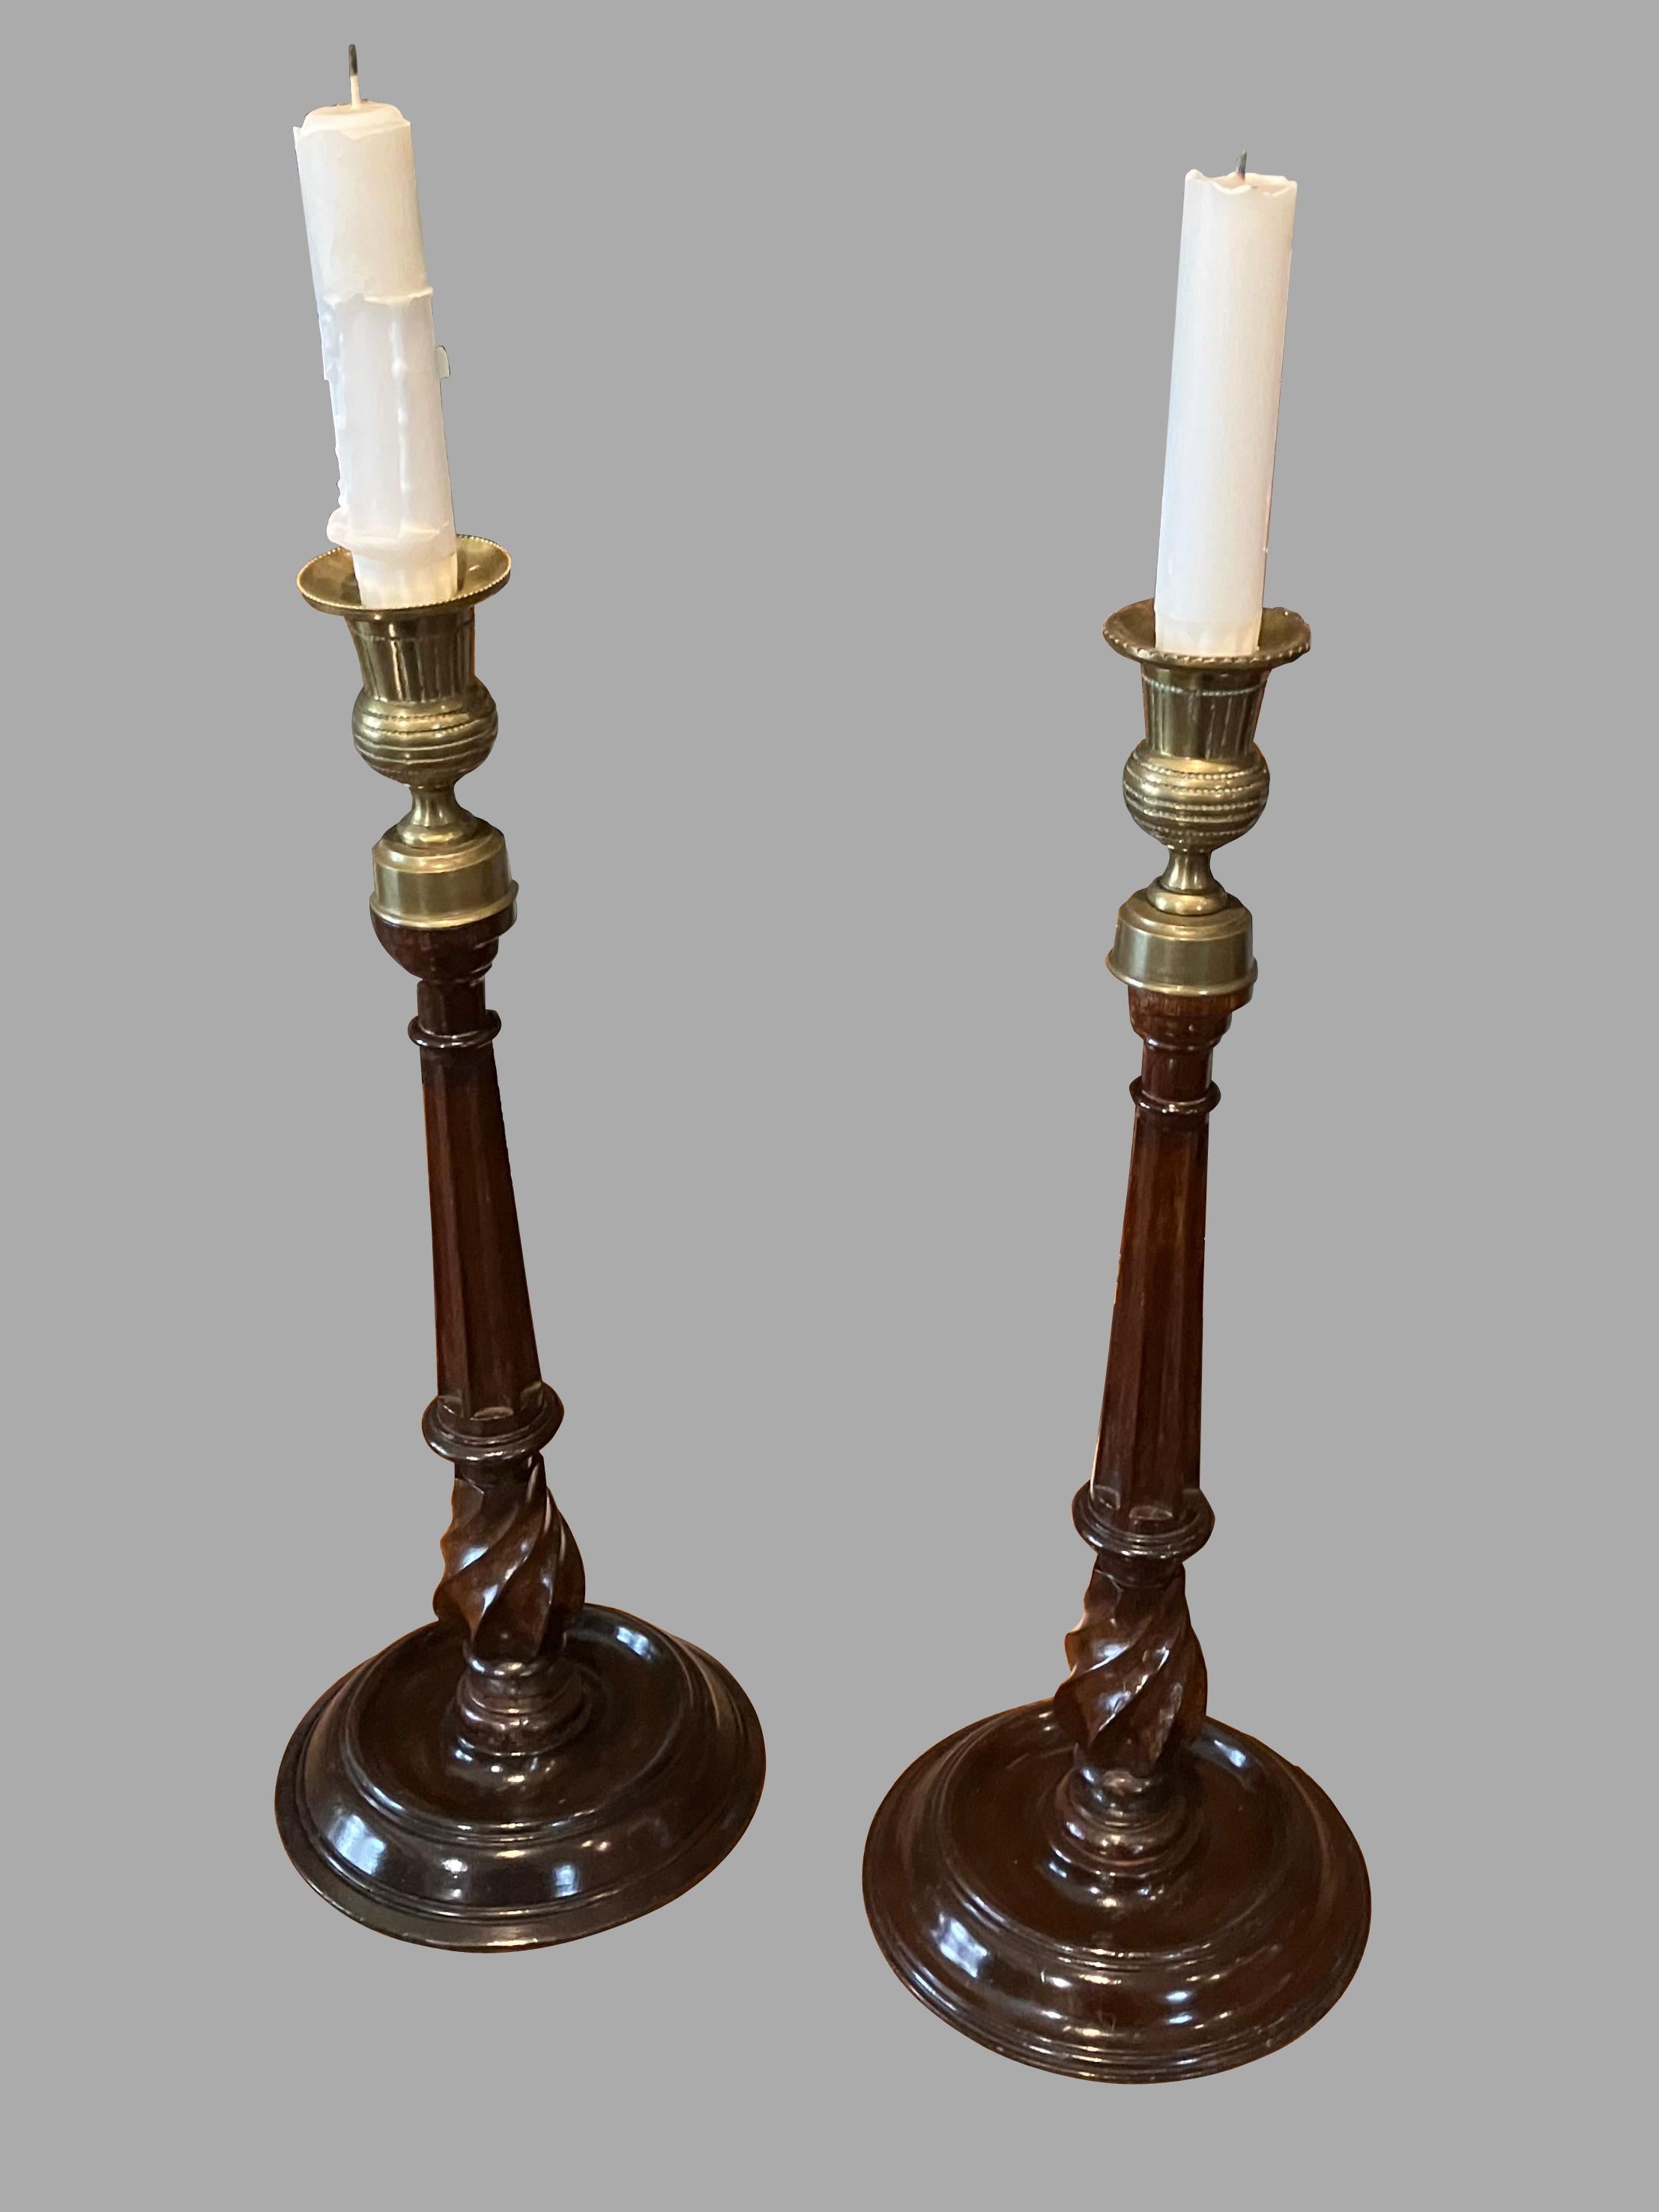 Une bonne paire de chandeliers anglais de style géorgien en acajou et en laiton, les becs en laiton reposant sur des colonnes d'acajou à cannelures terminées par des bases circulaires tournées. Ce style de chandelier est apparu pour la première fois